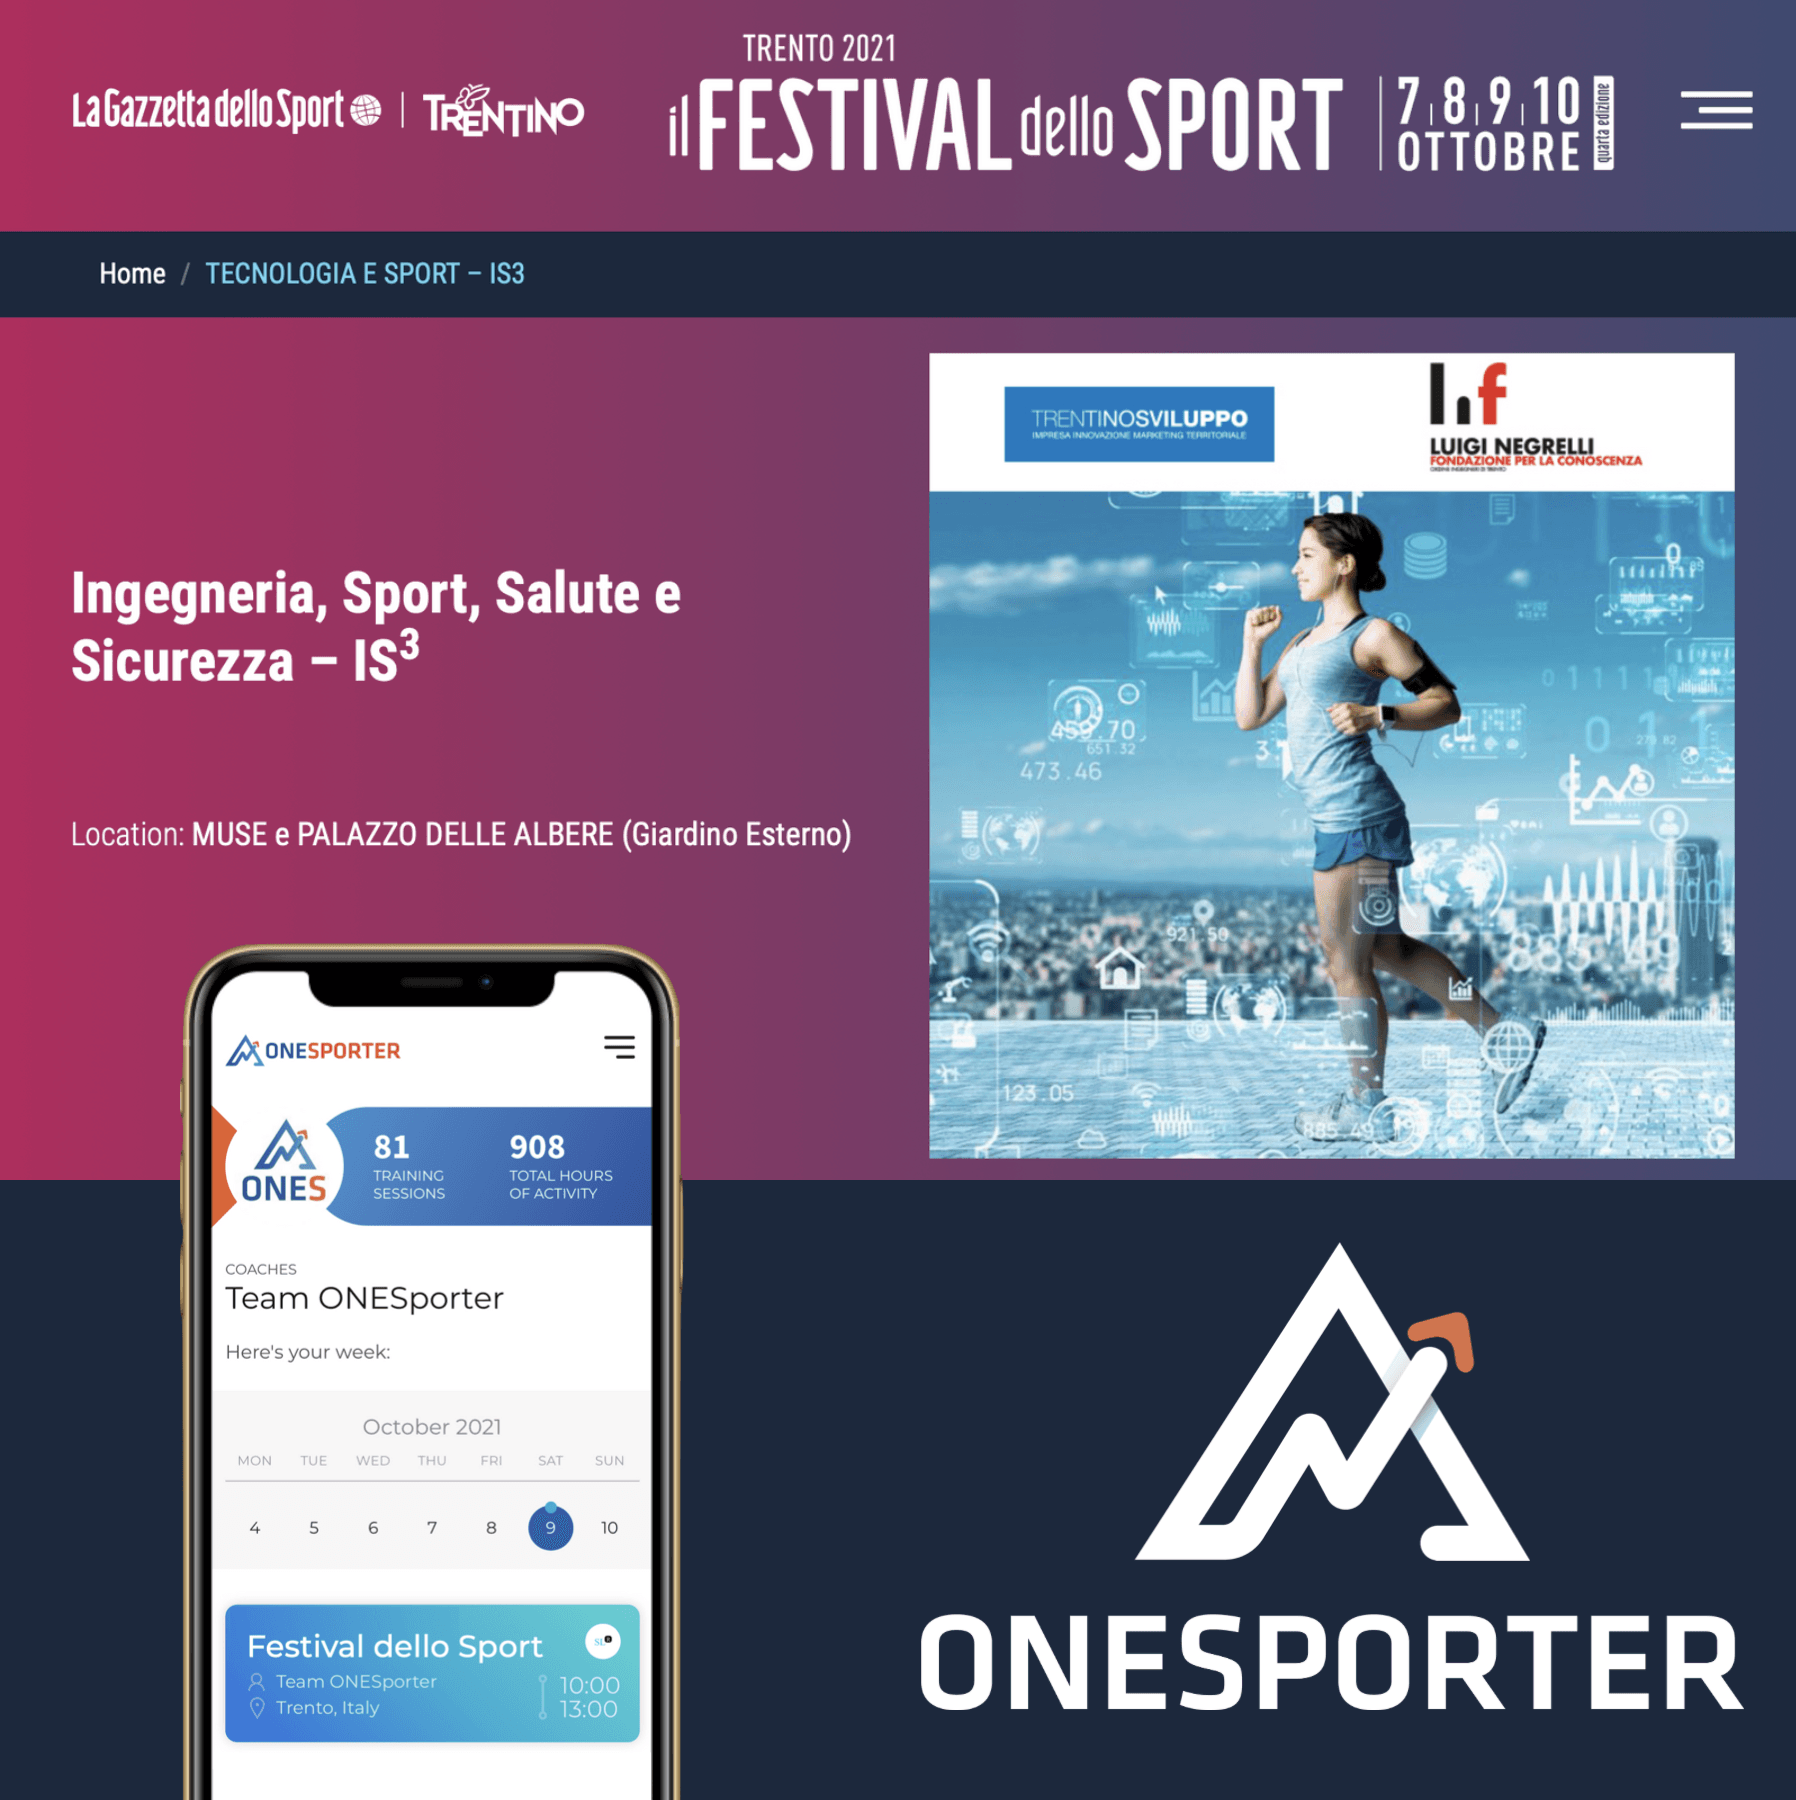 onesporter_innovazione_festival_dello_sport_trento_gazzetta_trentino_sviluppo_startup